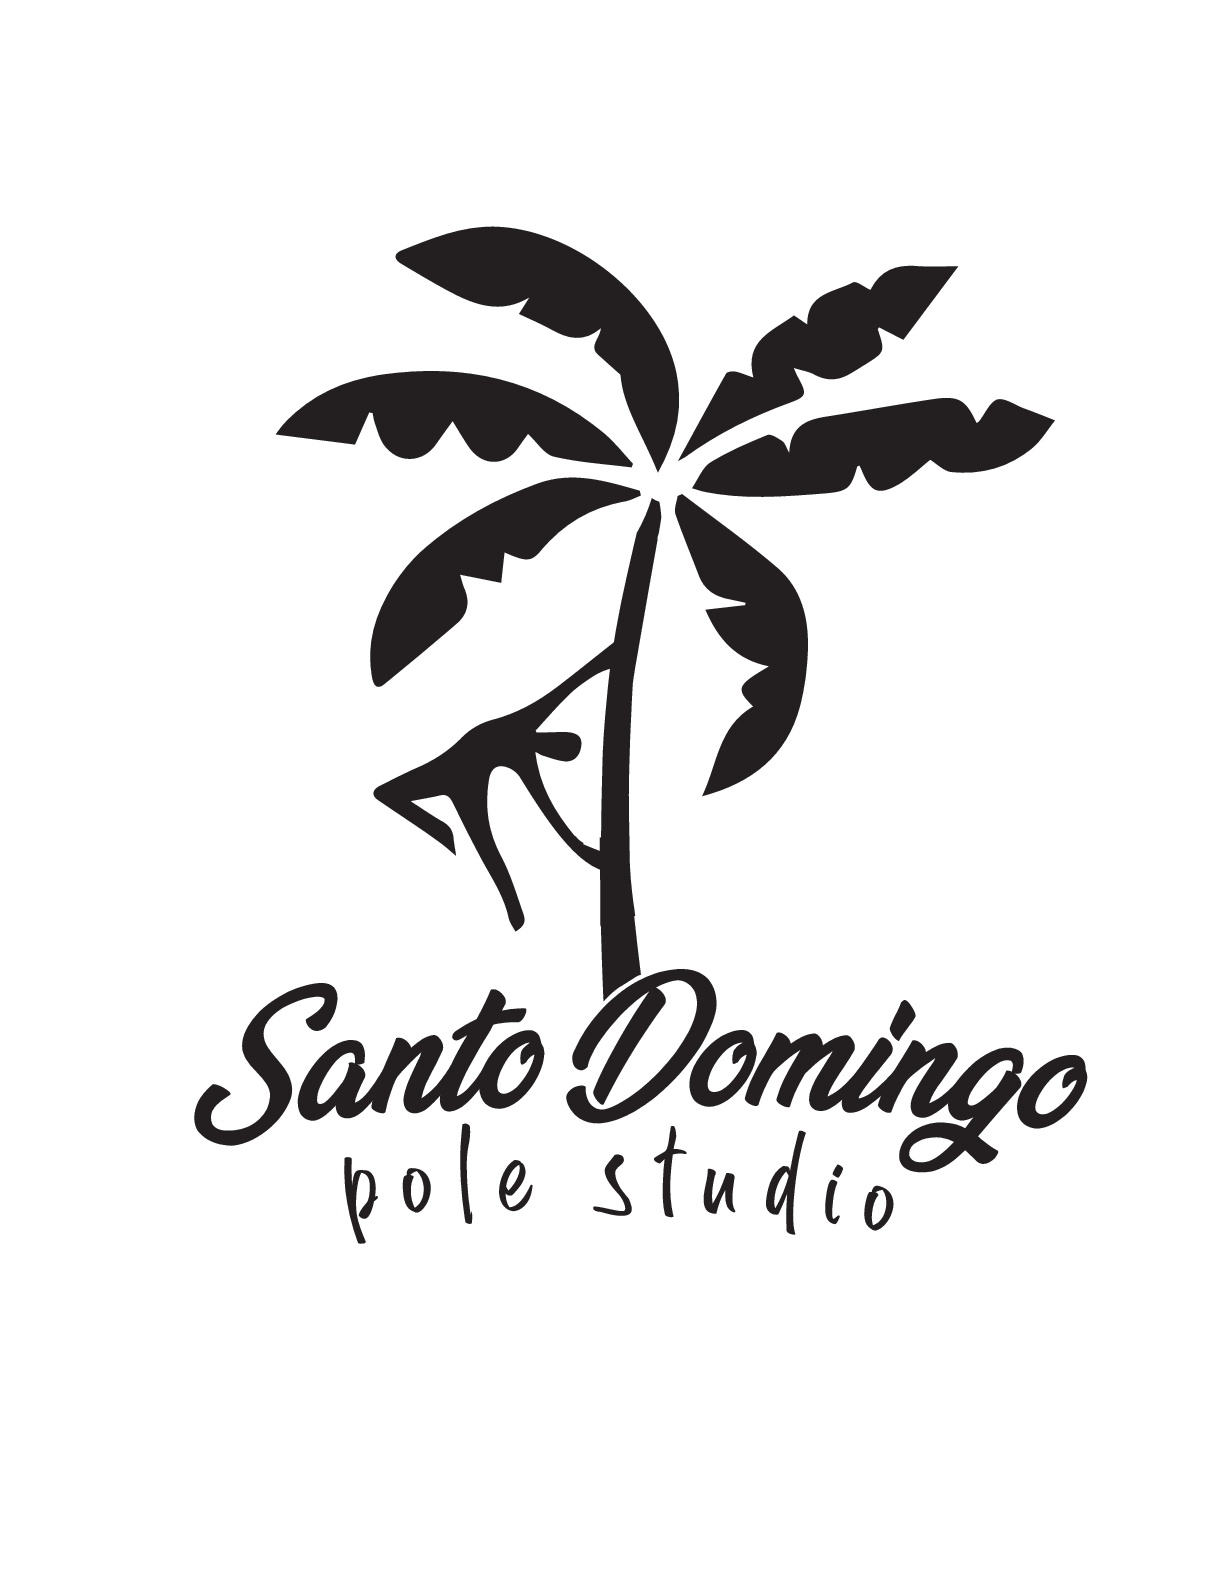 Santo Domingo Pole Studio